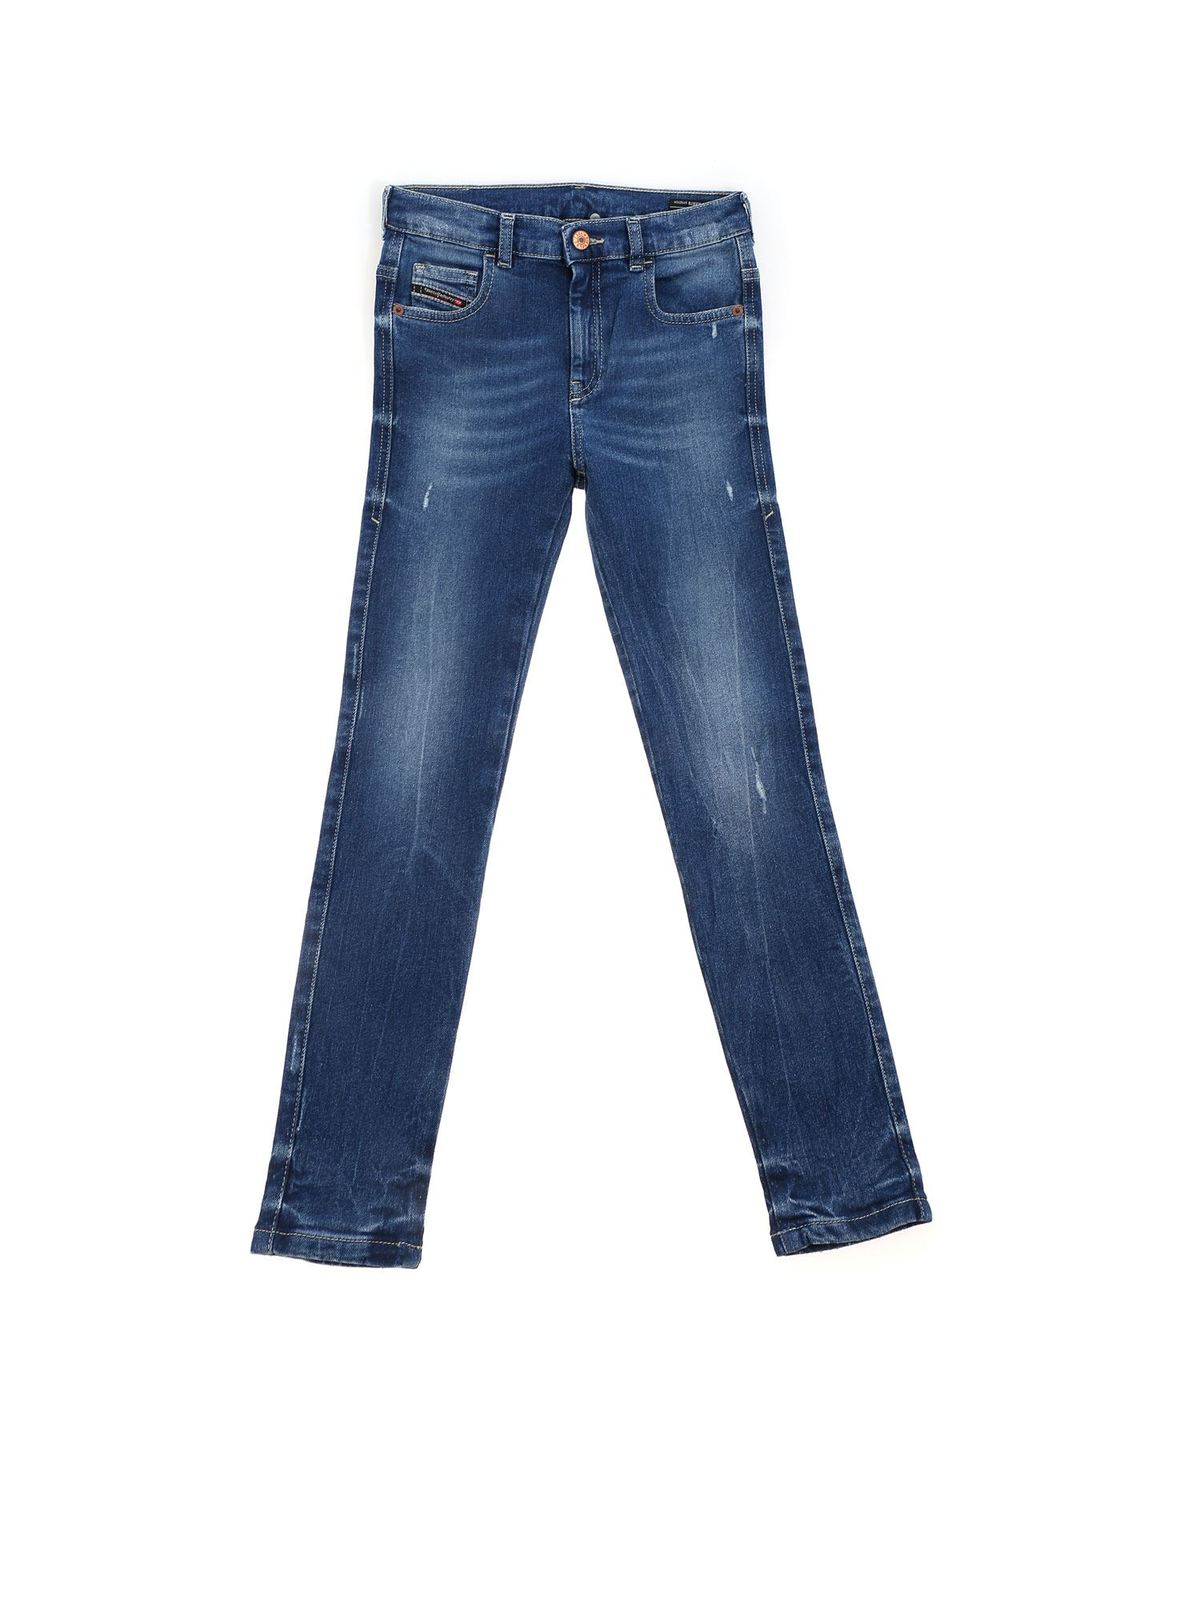 Jeans Diesel - Destroyed effect jeans in blue - 00J4ZXKXB78K01 | iKRIX.com